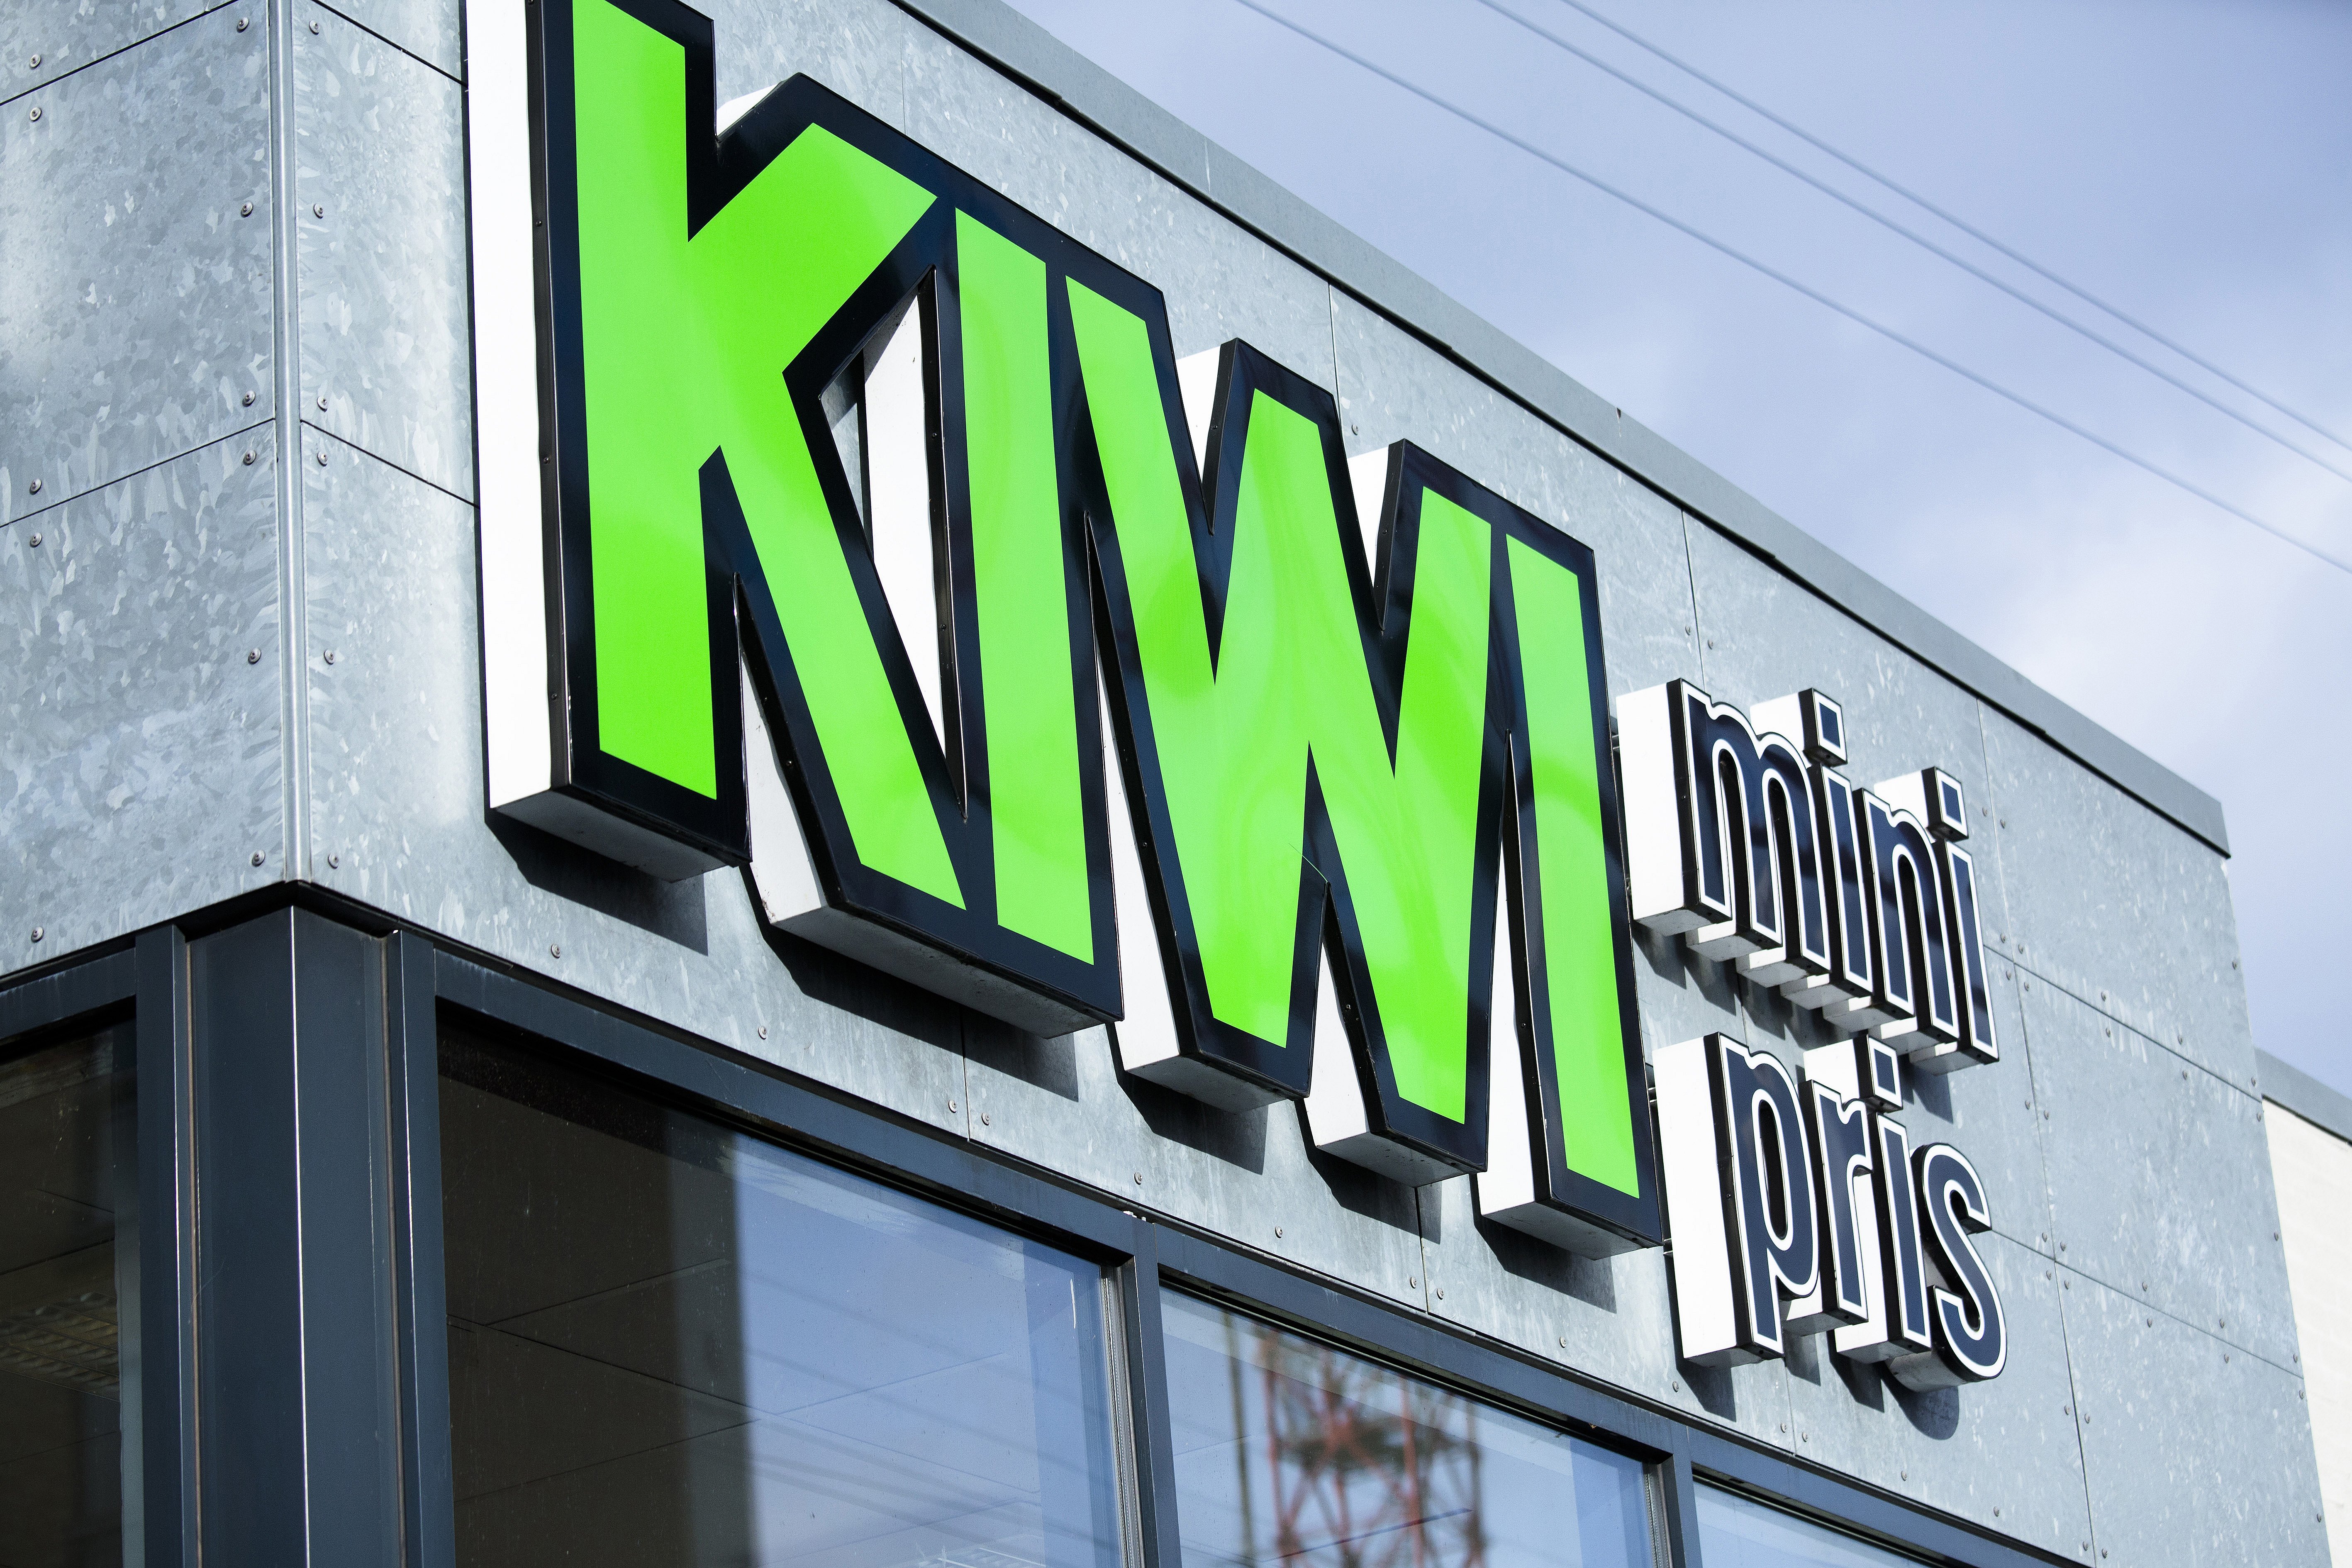 Perth tæmme hjul Kiwi lukker alle butikker: 1600 ansatte mister jobbet | TV2 Østjylland